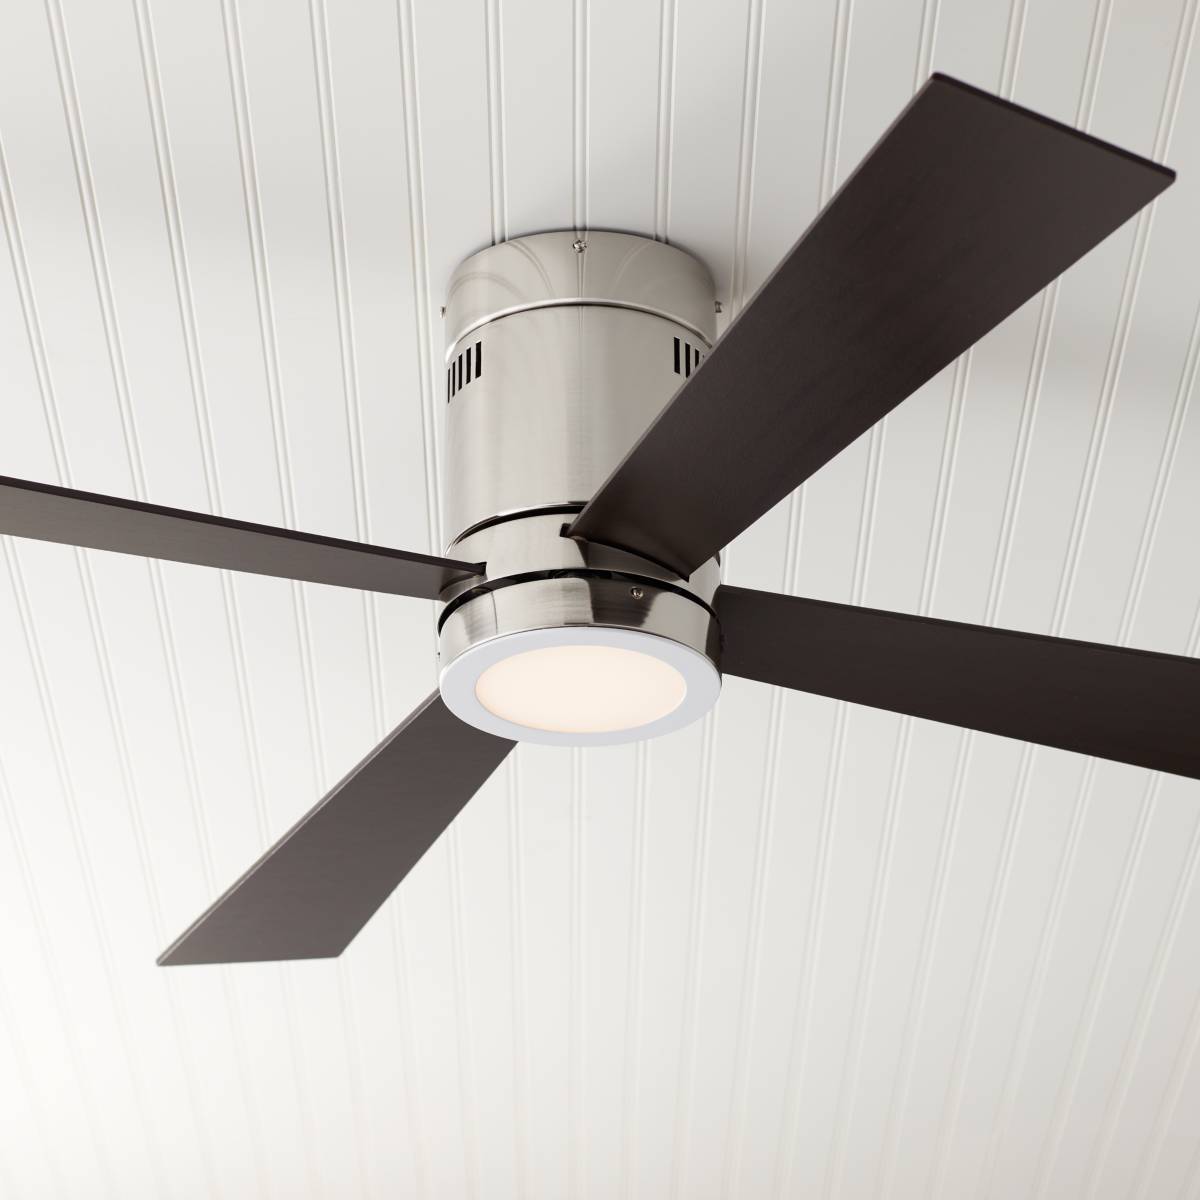 Hugger Ceiling Fans - Flush Mount Fan Designs | Lamps Plus